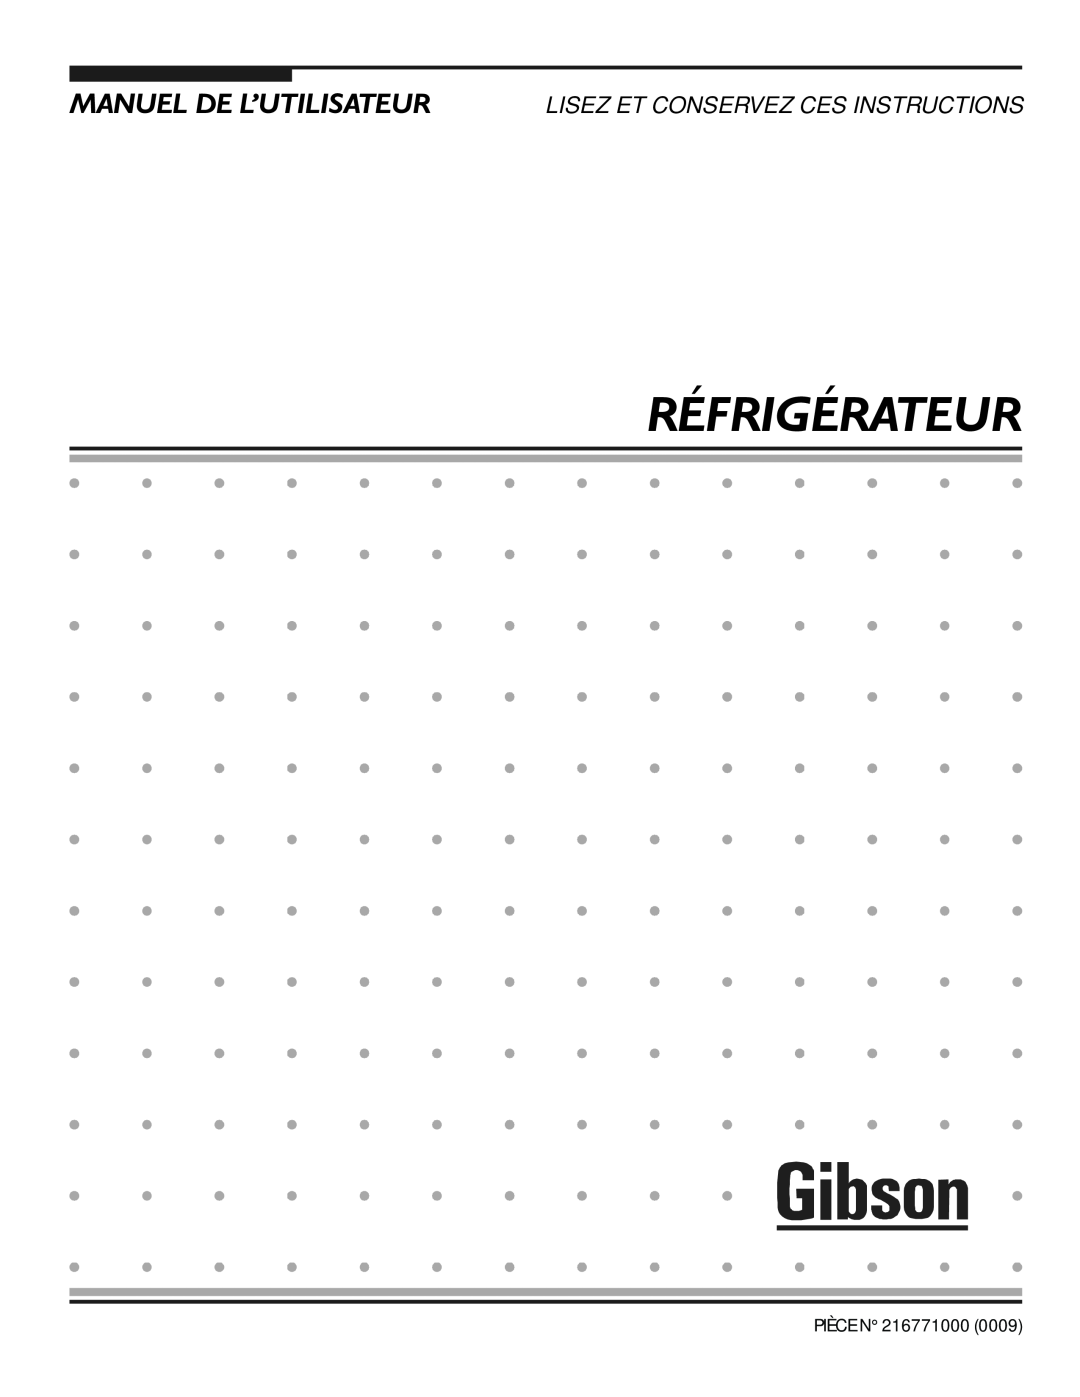 Electrolux - Gibson 216771000 manual 5e5,*e5$785, 0$18//·87,/,6$785, Lisez Et Conservez Ces Instructions 